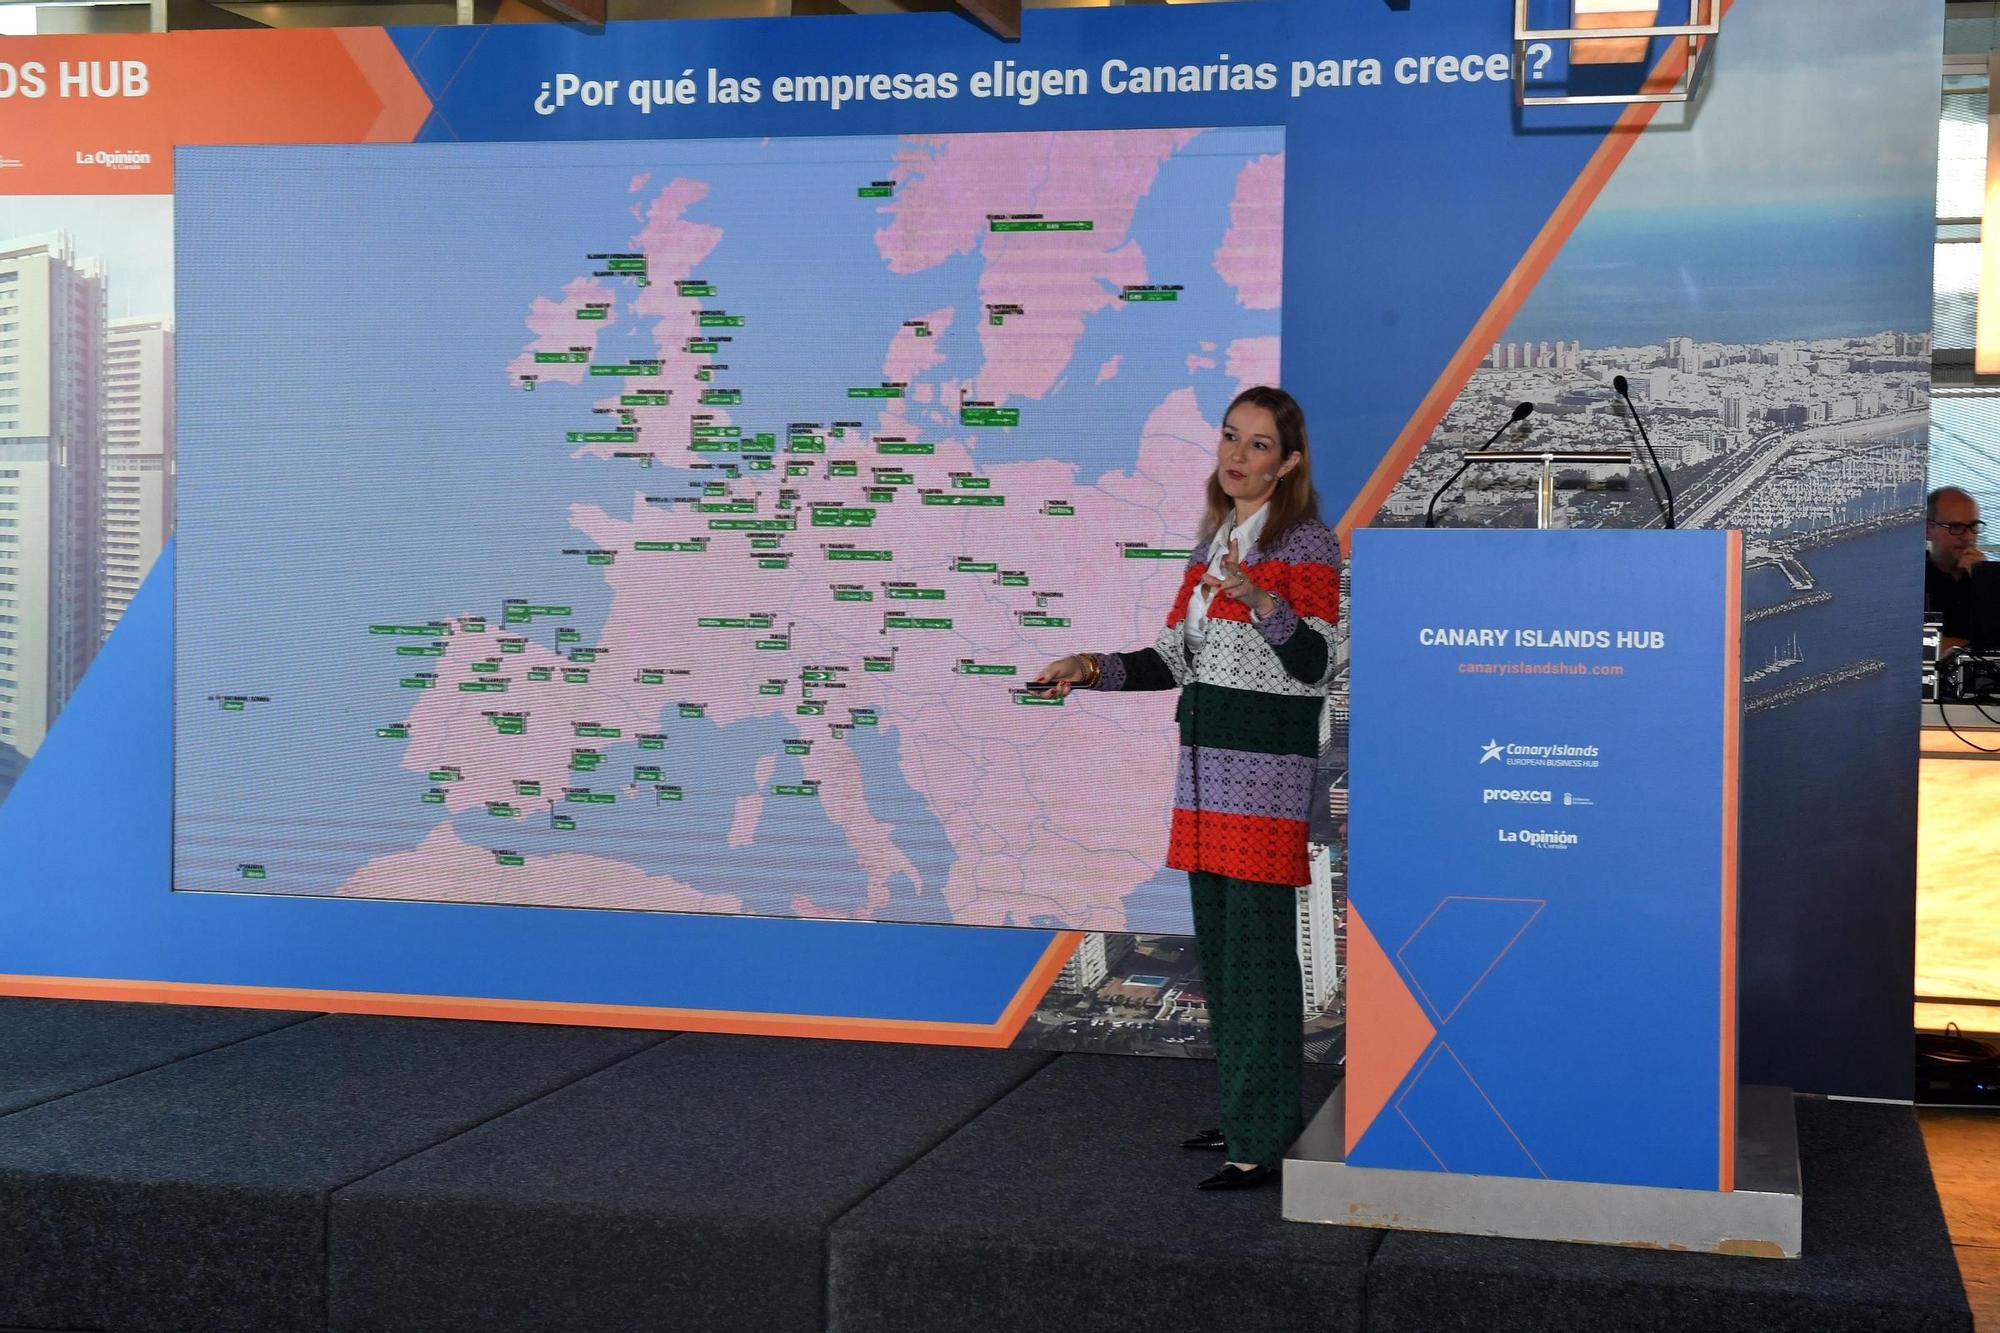 Canary Islands Hub: ¿por qué las empresas eligen Canarias para crecer?